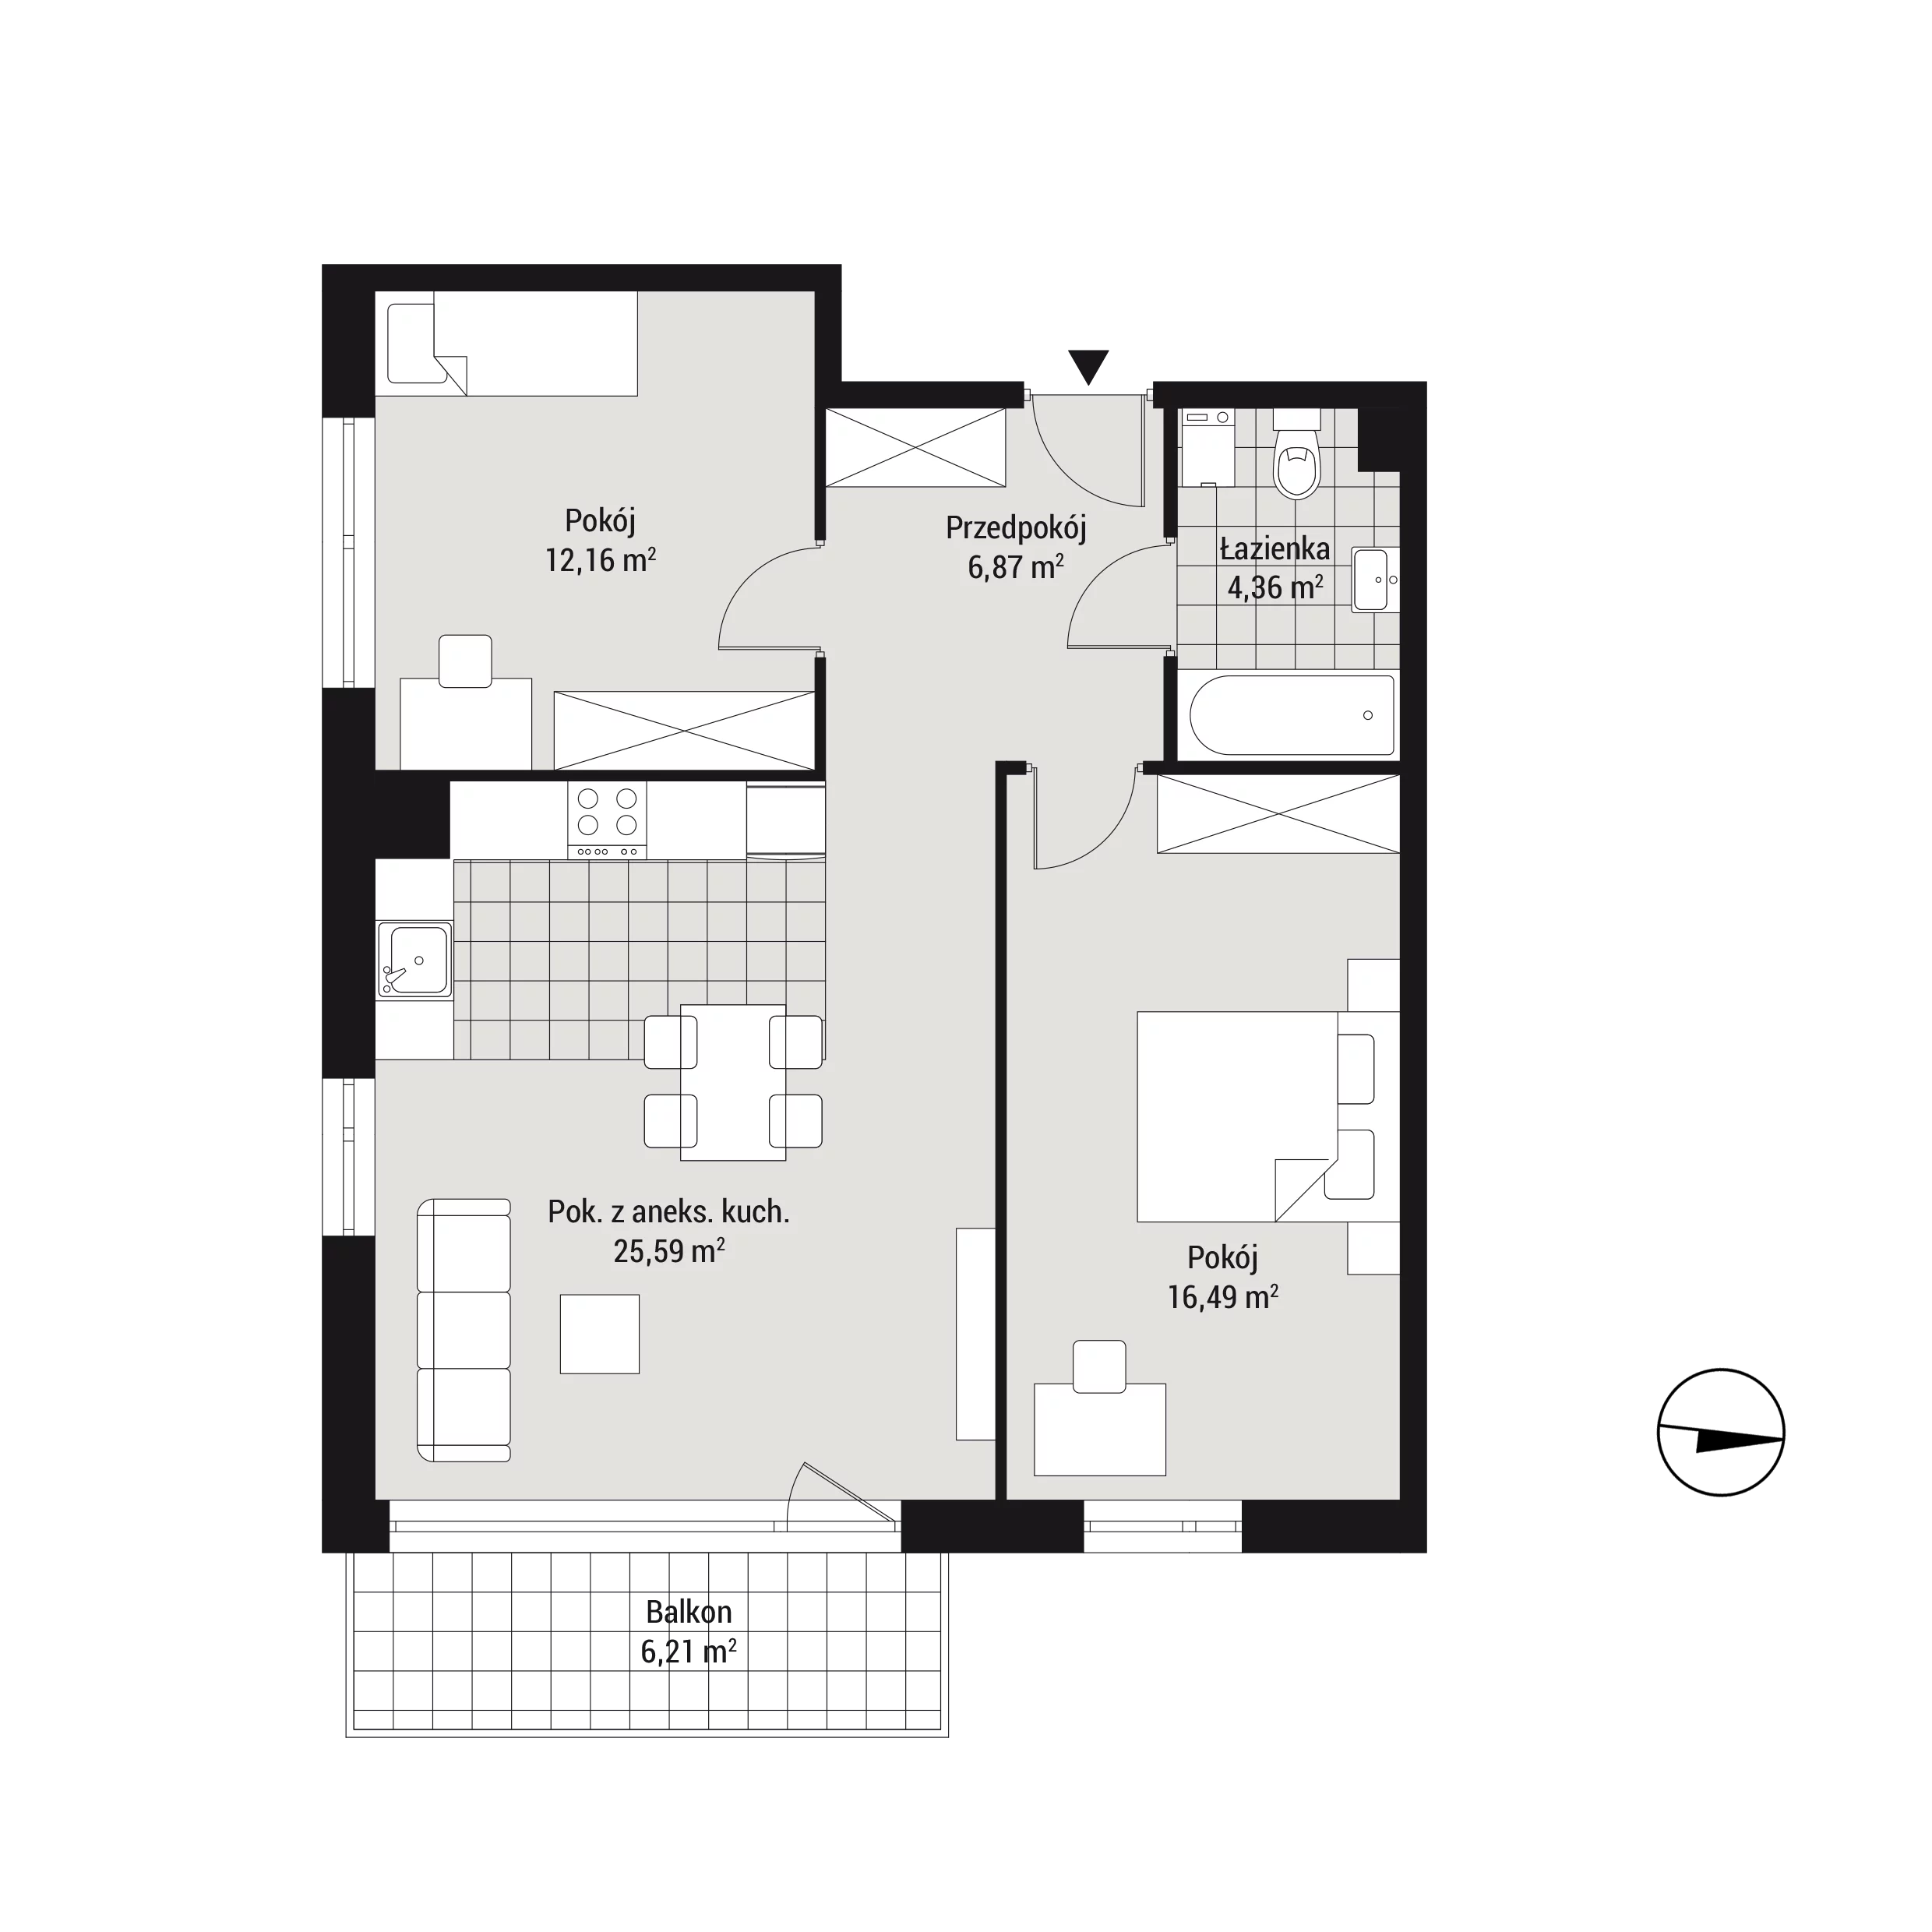 Mieszkanie 65,46 m², piętro 4, oferta nr mieszkanie C35, Na Koszutce, Katowice, Śródmieście, Koszutka, ul. Słoneczna 1